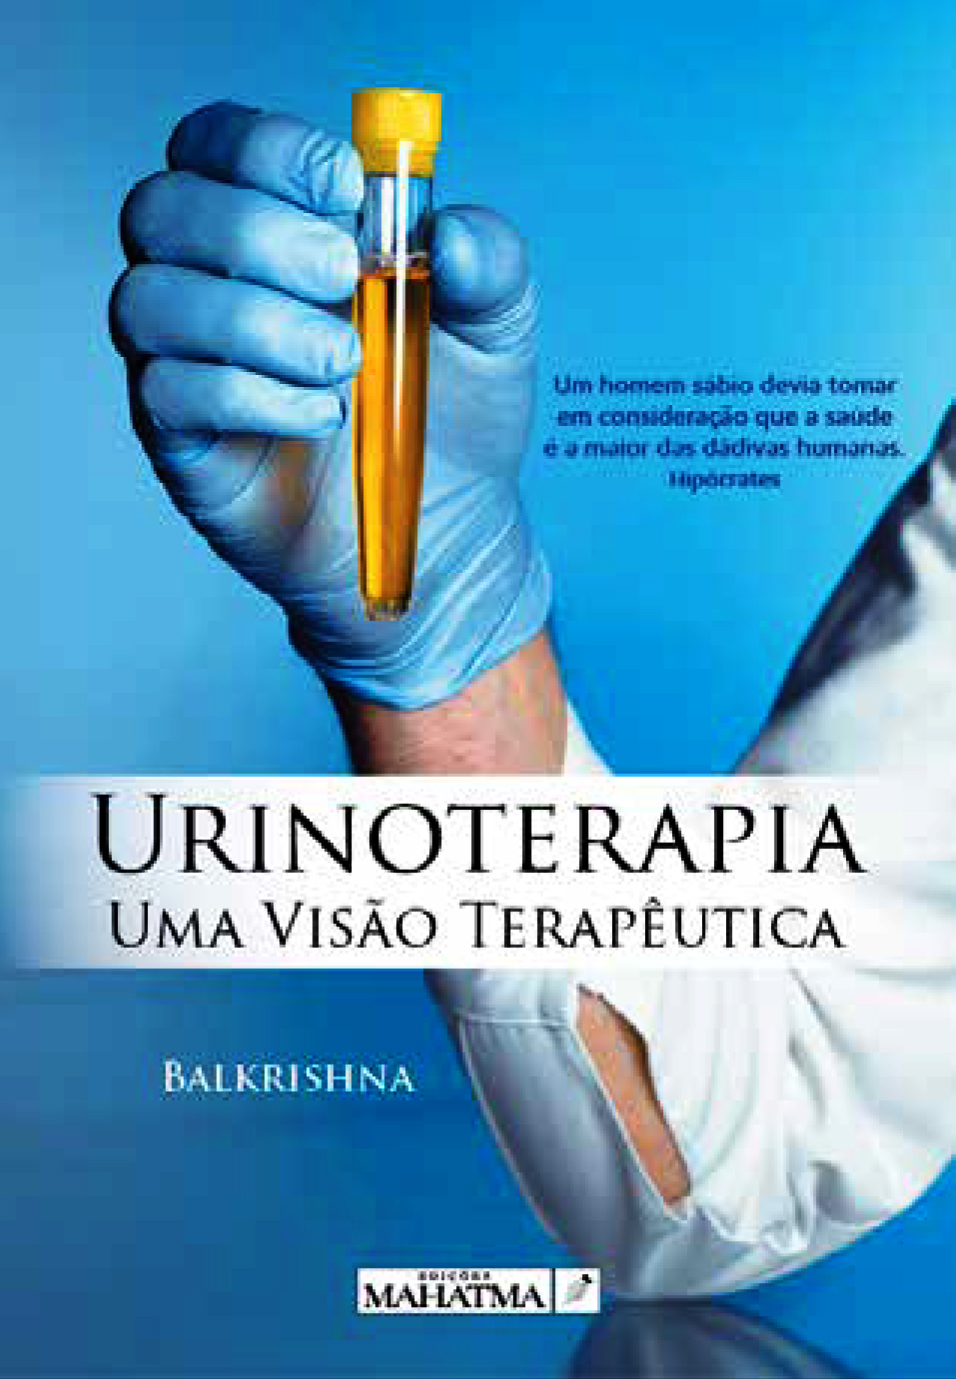 Urinoterapia - Uma Visão Terapêutica